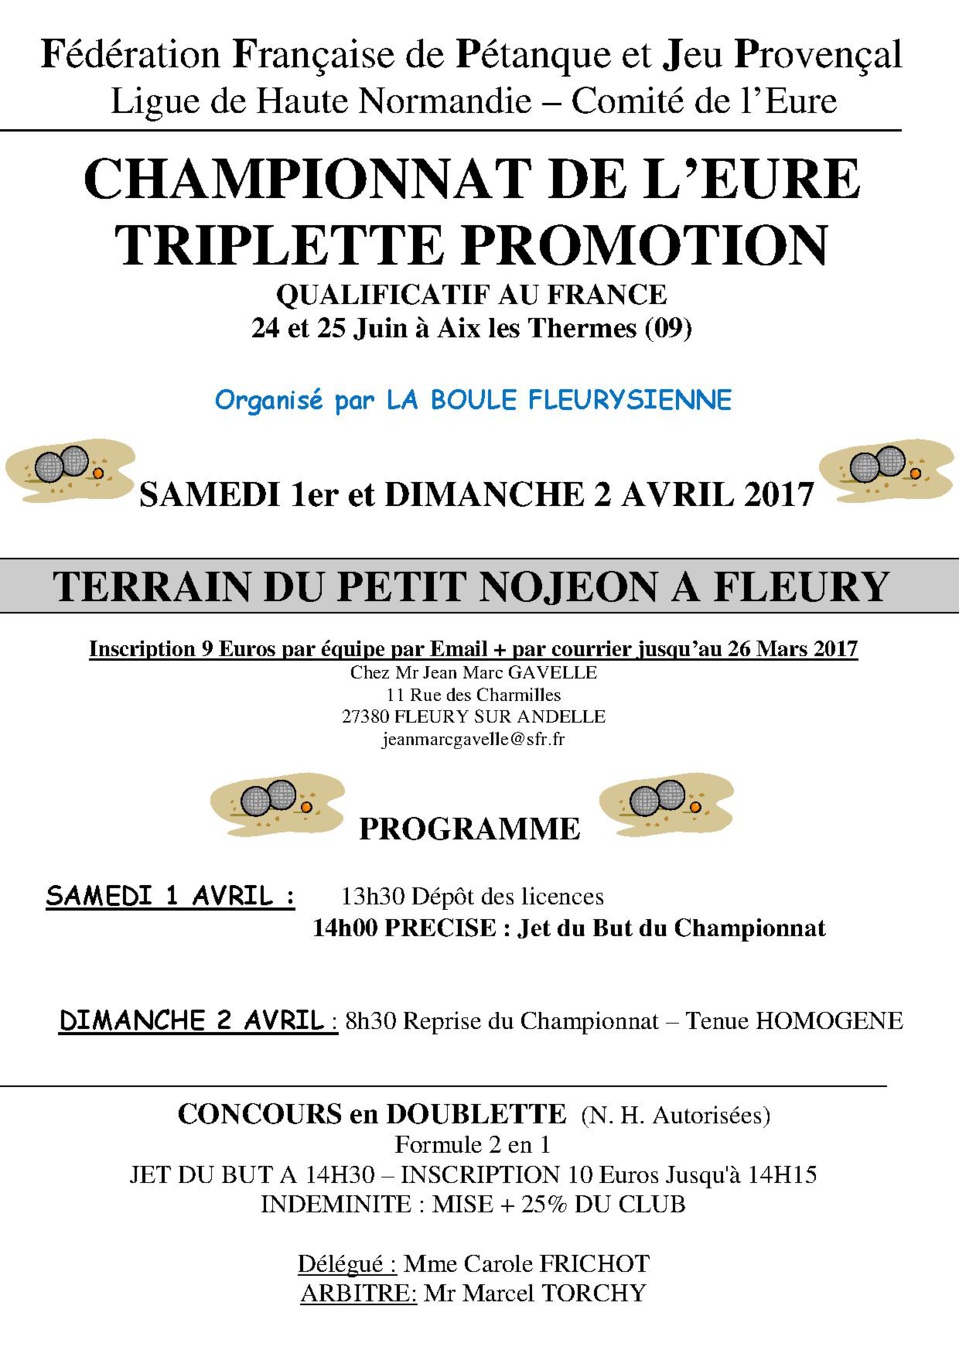 Ce week-end Championnat de L'Eure x 3 promotion à Fleury sur Andelle